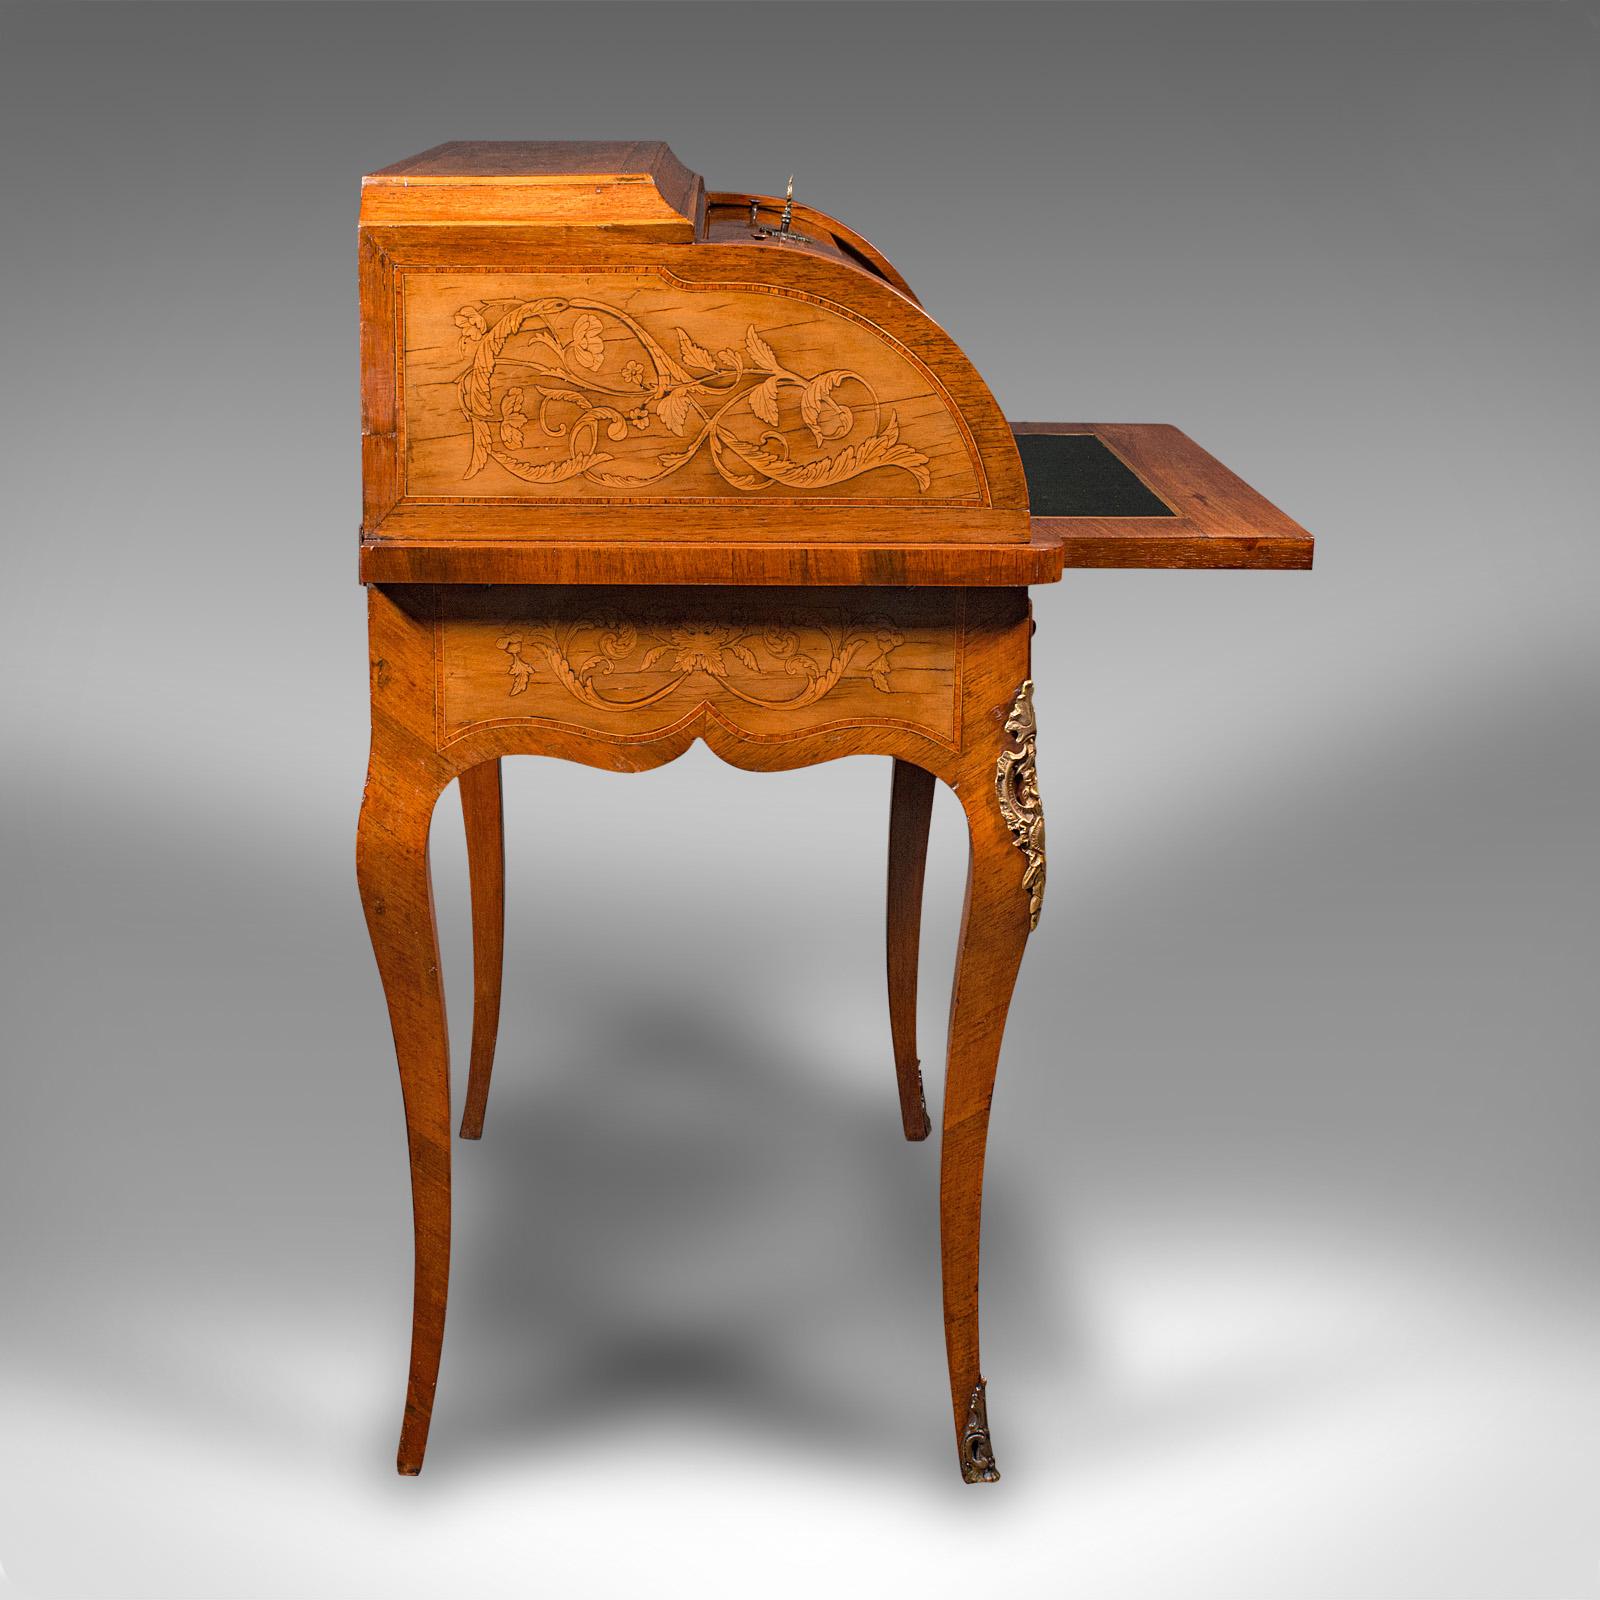 Antique Ladies Writing Desk, French, Walnut, Table, Bonheur Du Jour, Victorian 1